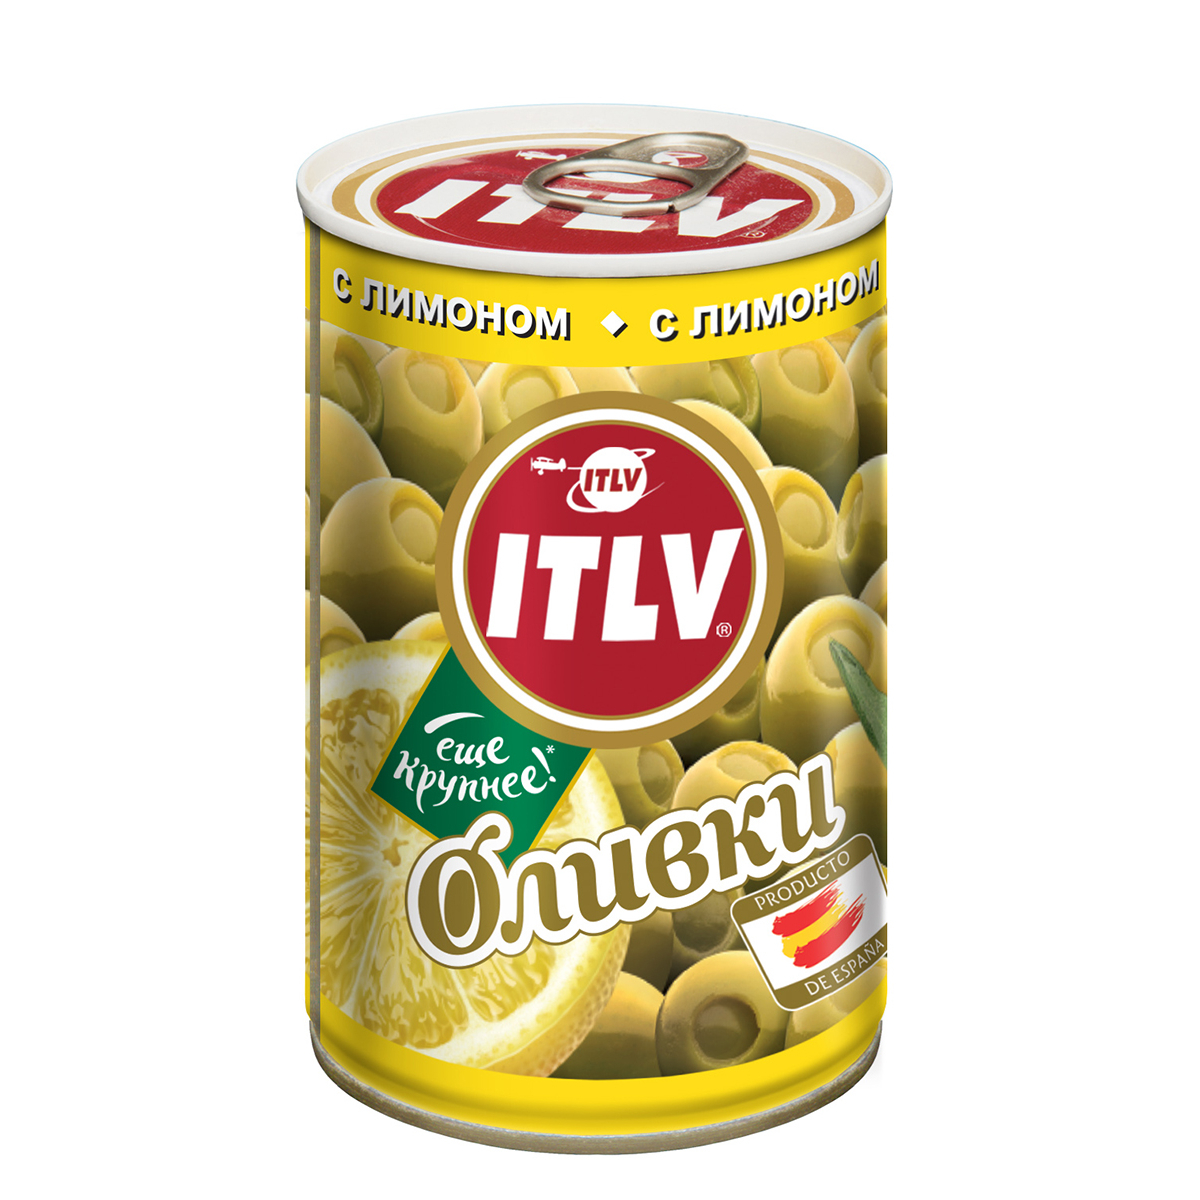 Оливки ITLV с лимоном 314 мл оливки itlv с косточкой 195 г дой пак